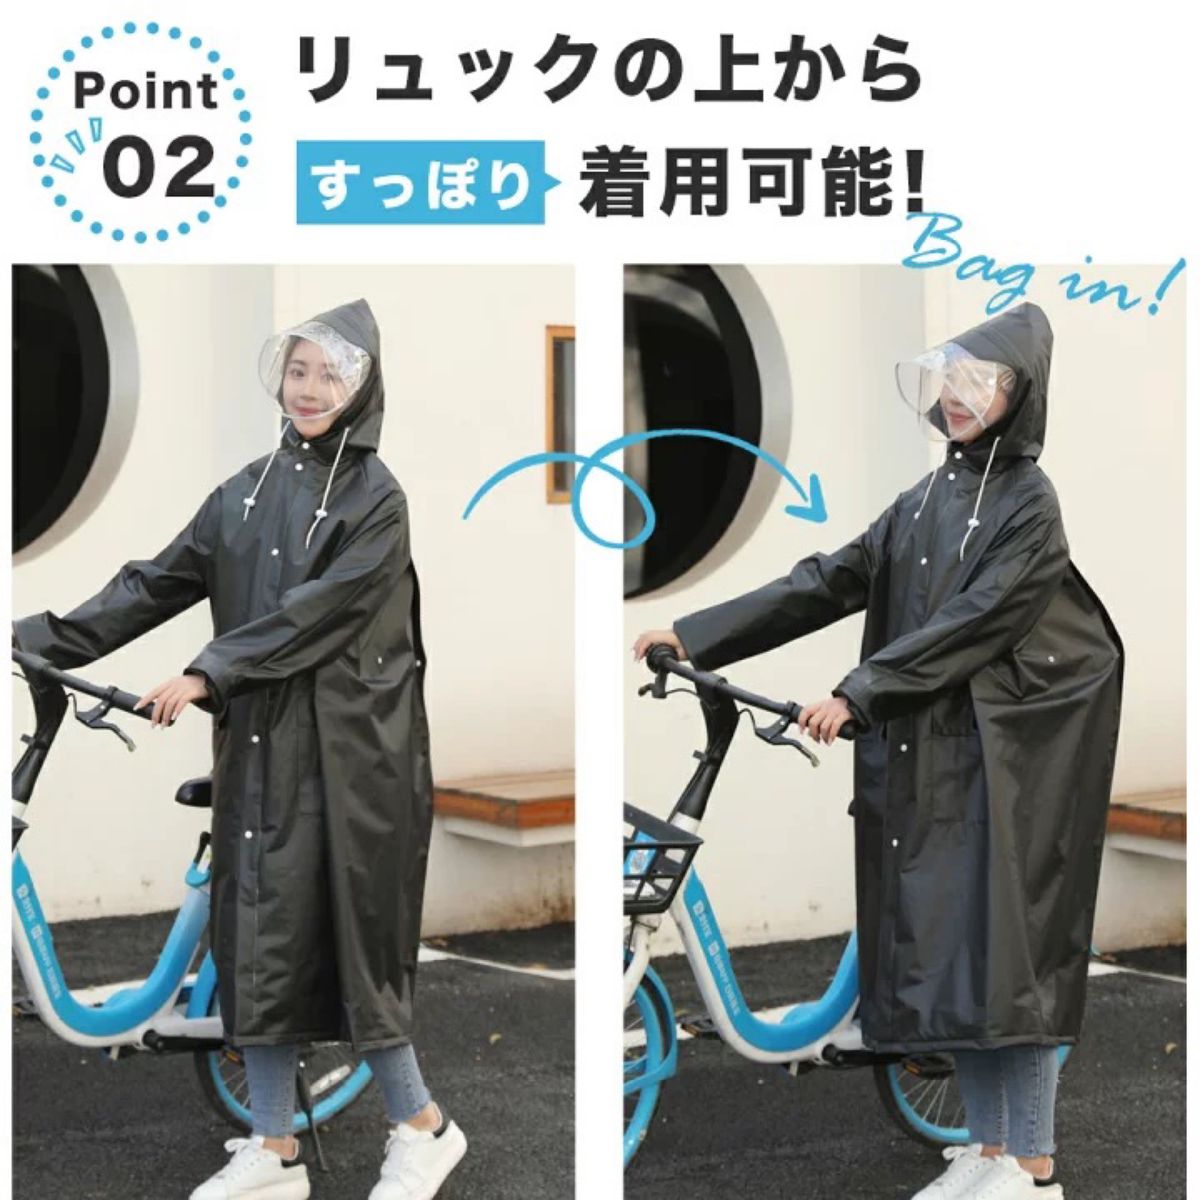 レインコート自転車 バイクポンチョ レインポンチョ 雨具 二重ツバ付き超軽量